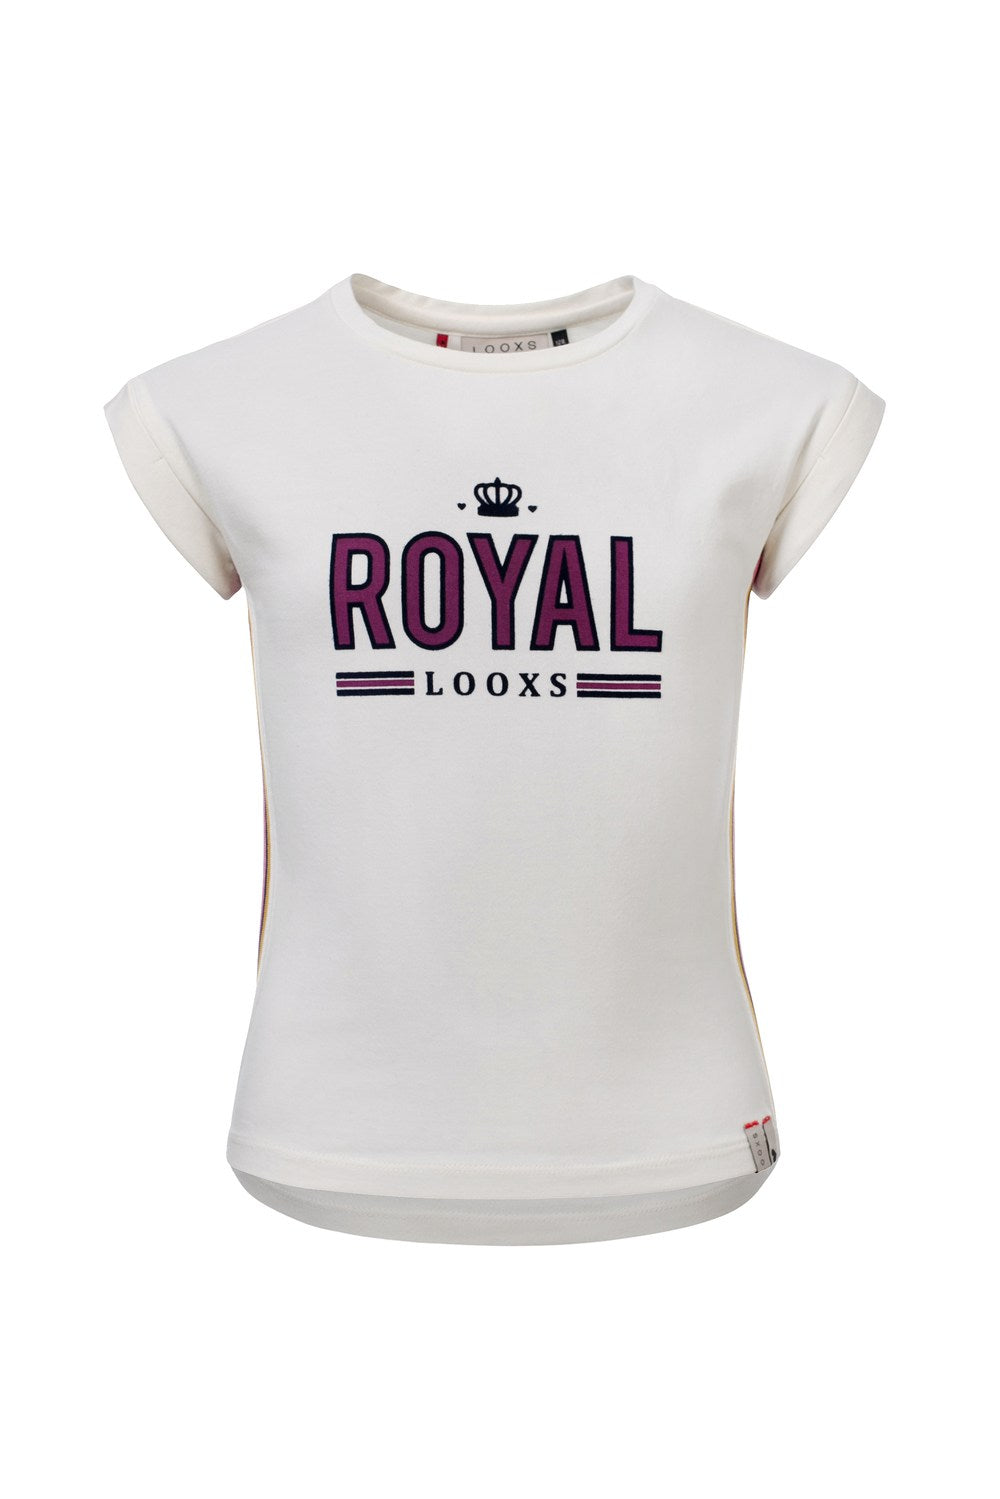 Loox's Revol. Shirt short sleeve Royal Shirts short mrs